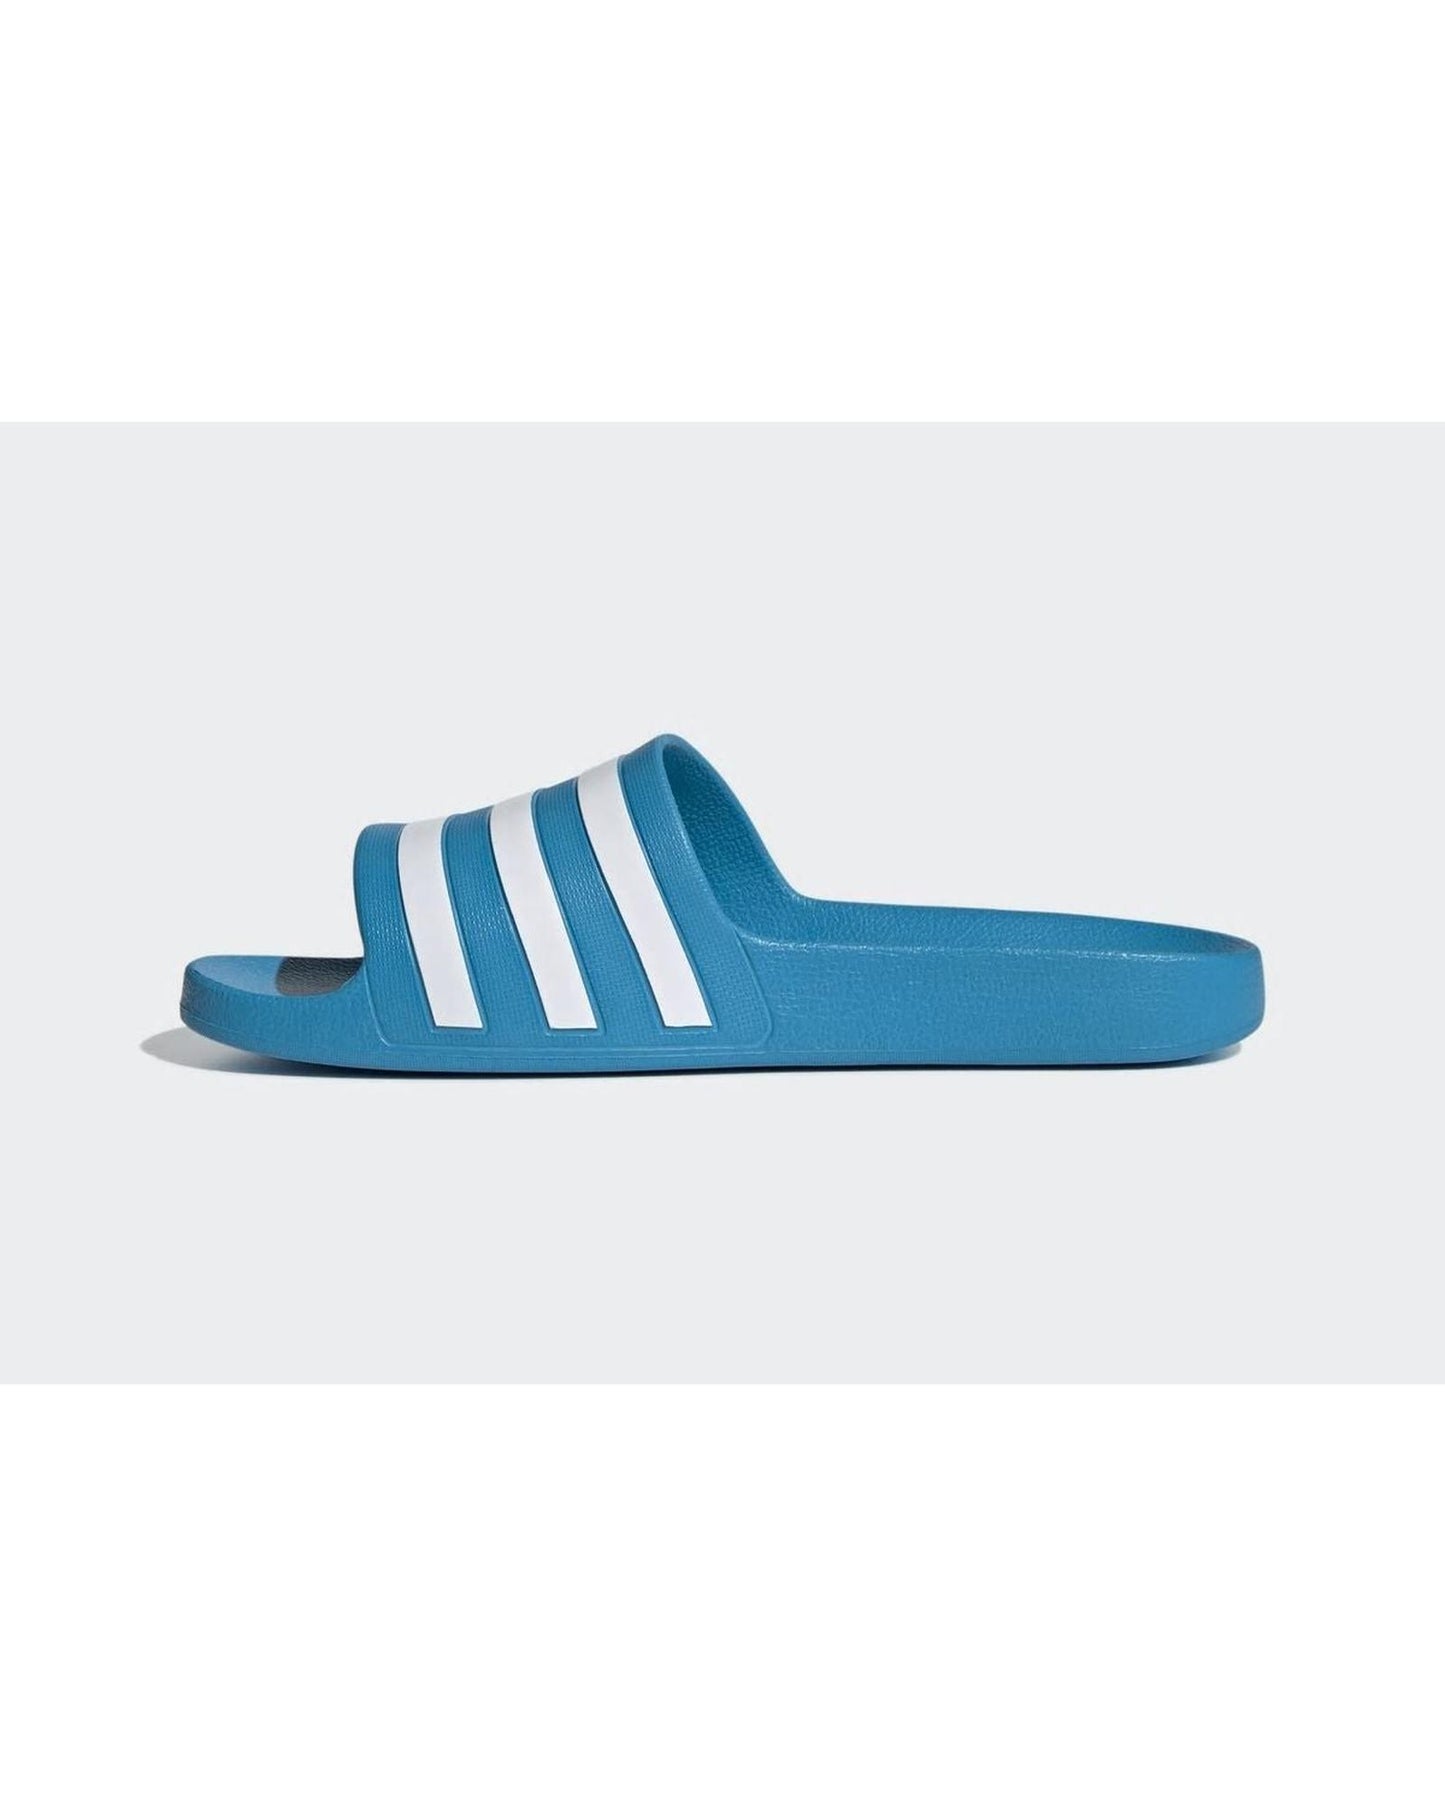 Blue/White Adidas Slides with Cloudfoam Cushioning - 5 US